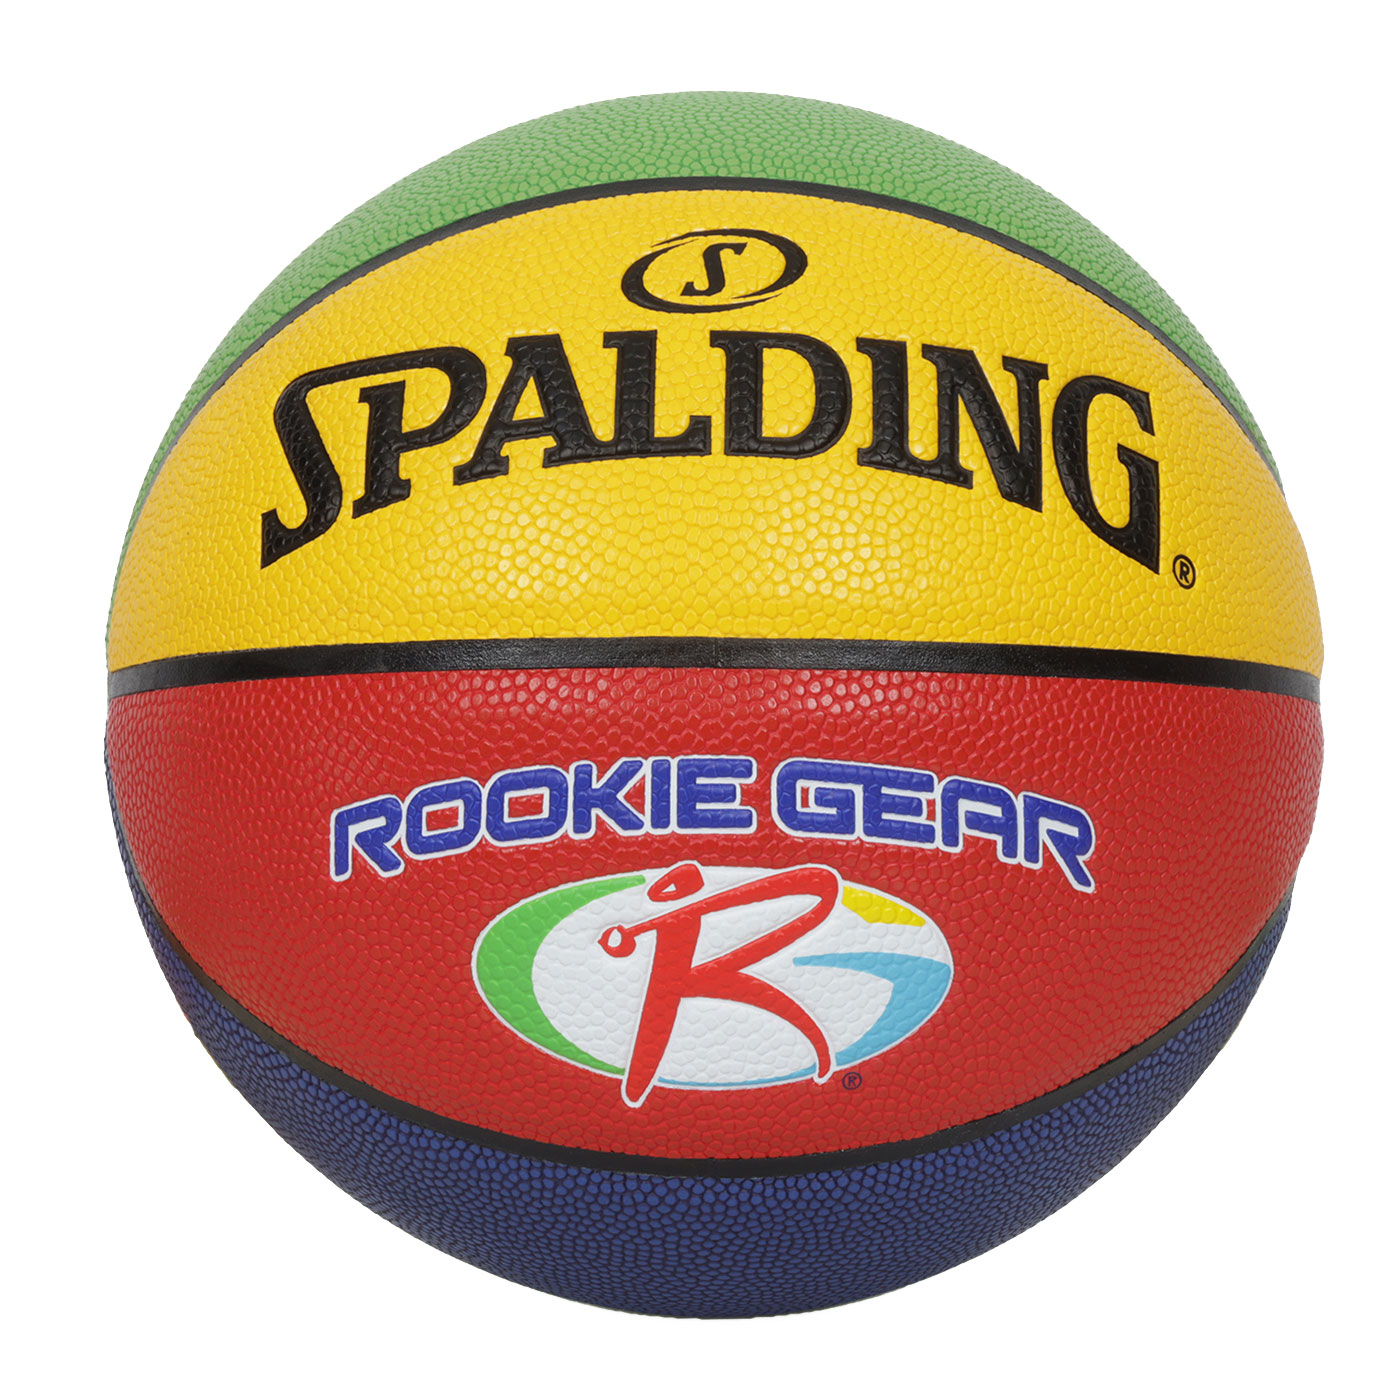 SPALDING 新人系列#5合成皮籃球#40645  SPA76951 - 紅黃藍綠白